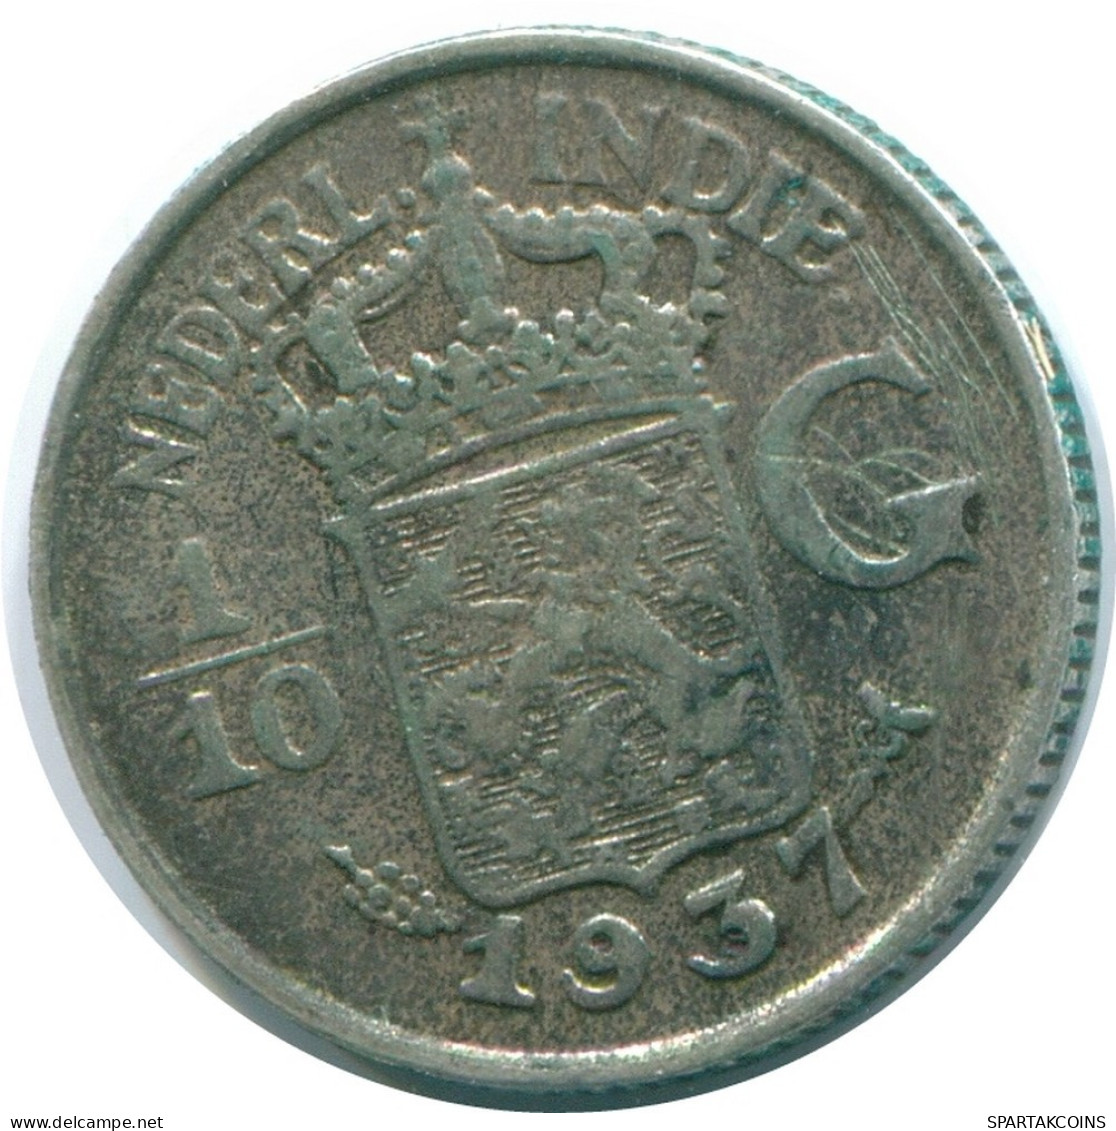 1/10 GULDEN 1937 NETHERLANDS EAST INDIES SILVER Colonial Coin #NL13479.3.U.A - Niederländisch-Indien